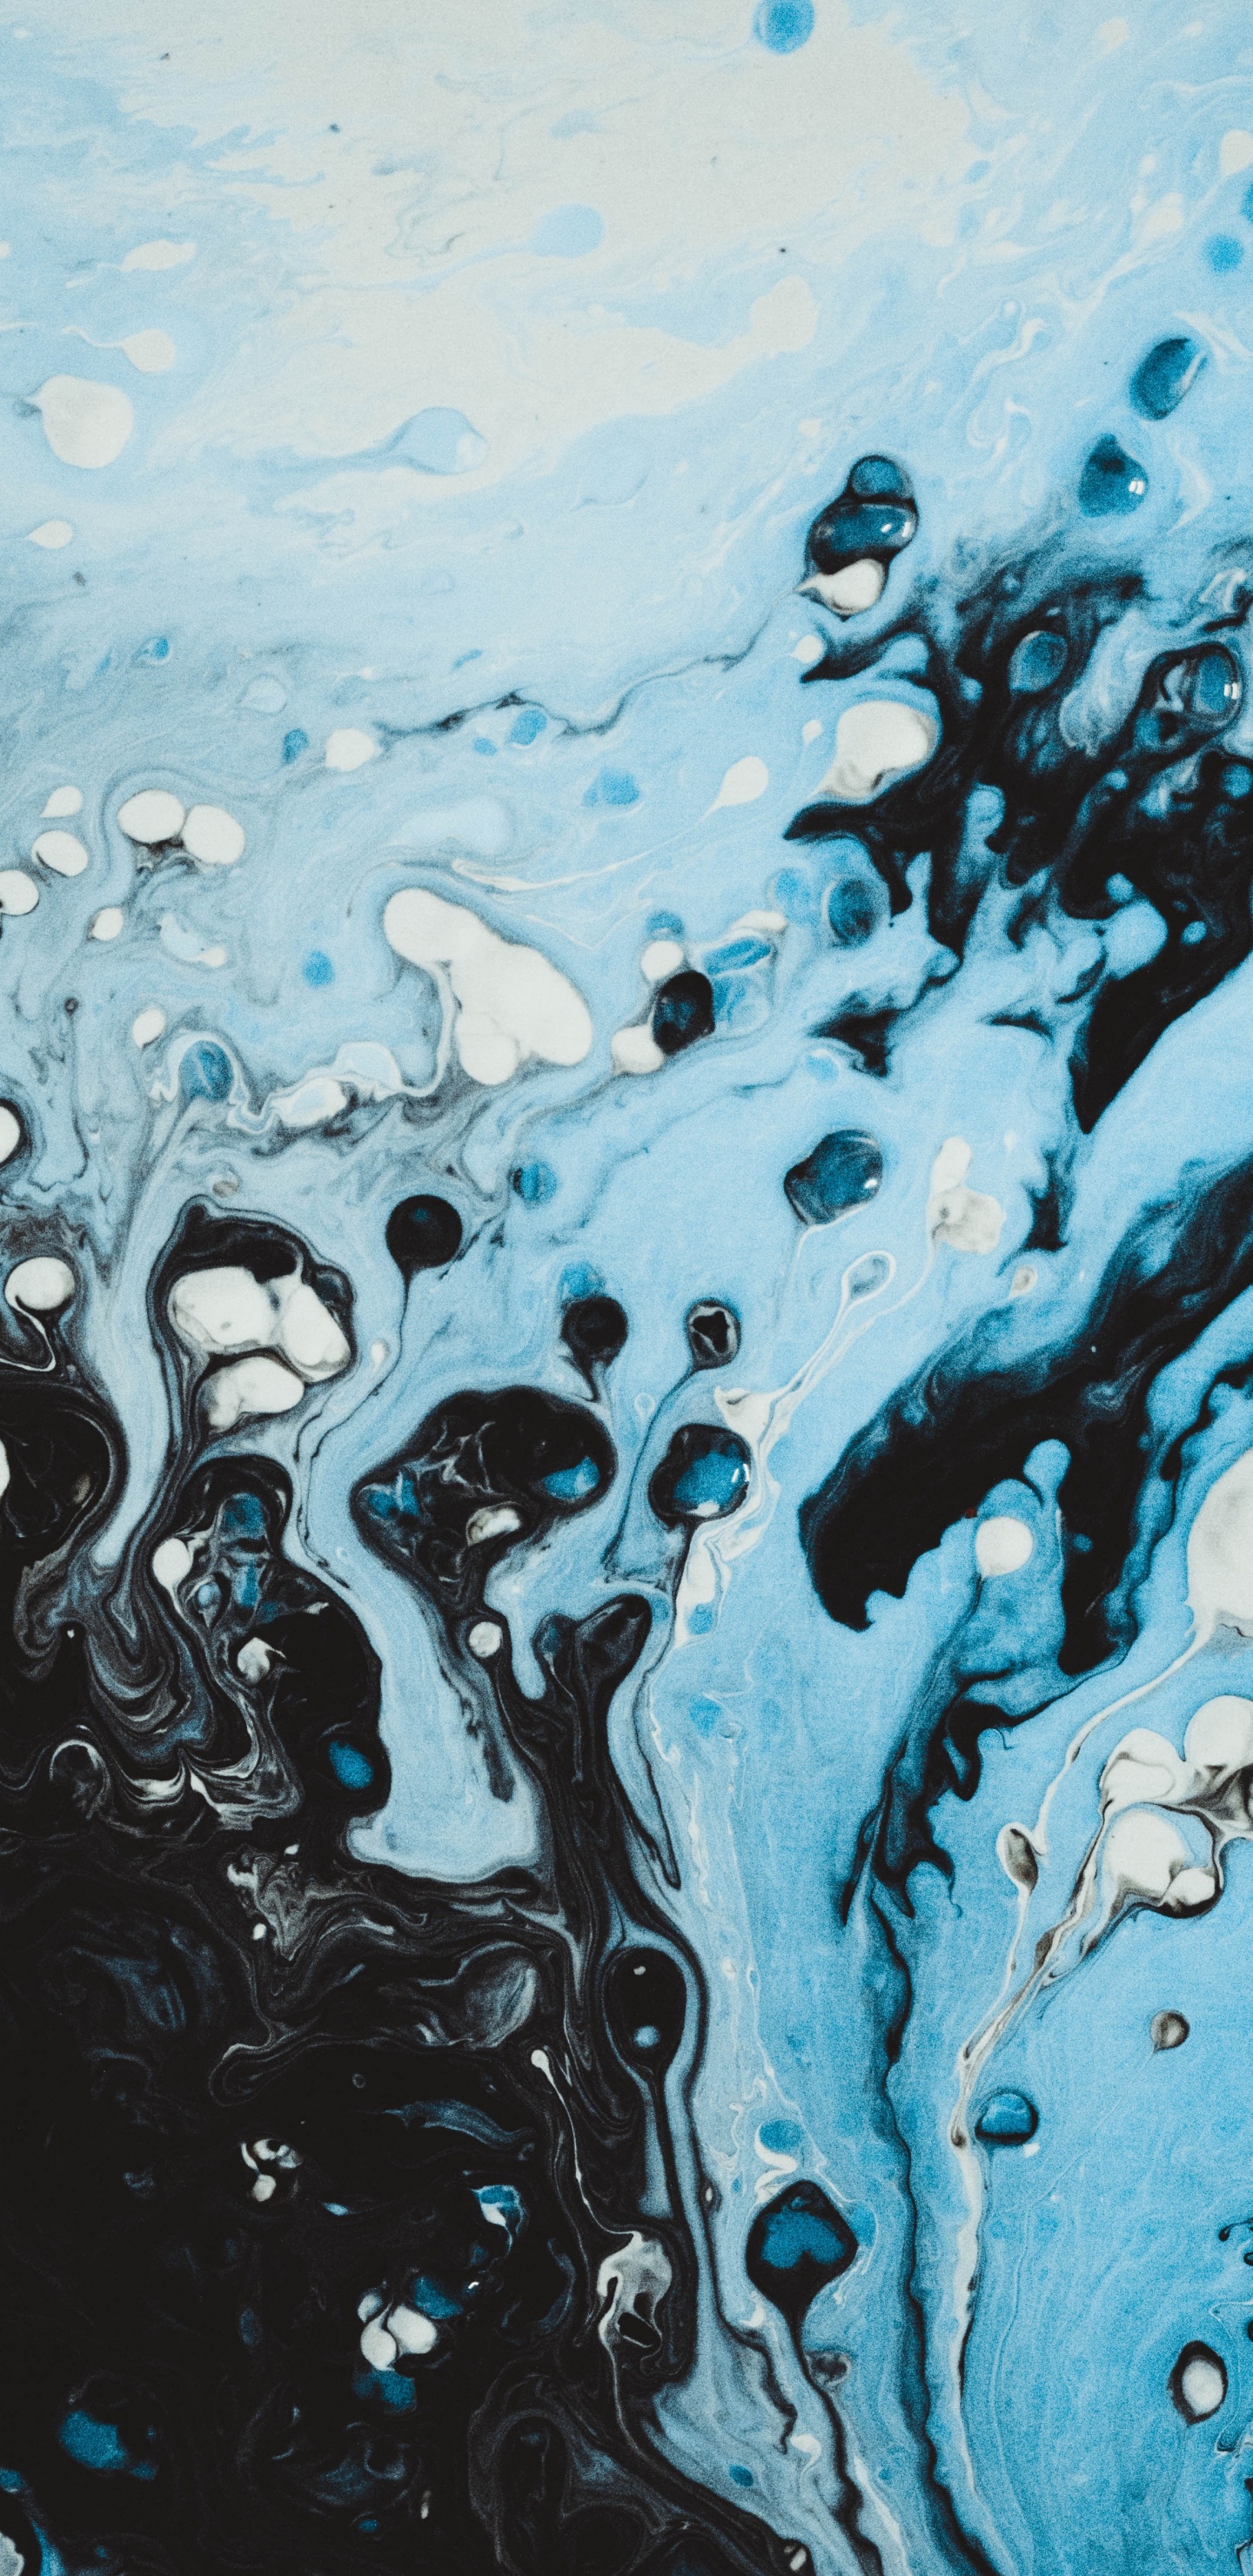 Blaue Und Weiße Wasserspritzer. Wallpaper in 1440x2960 Resolution